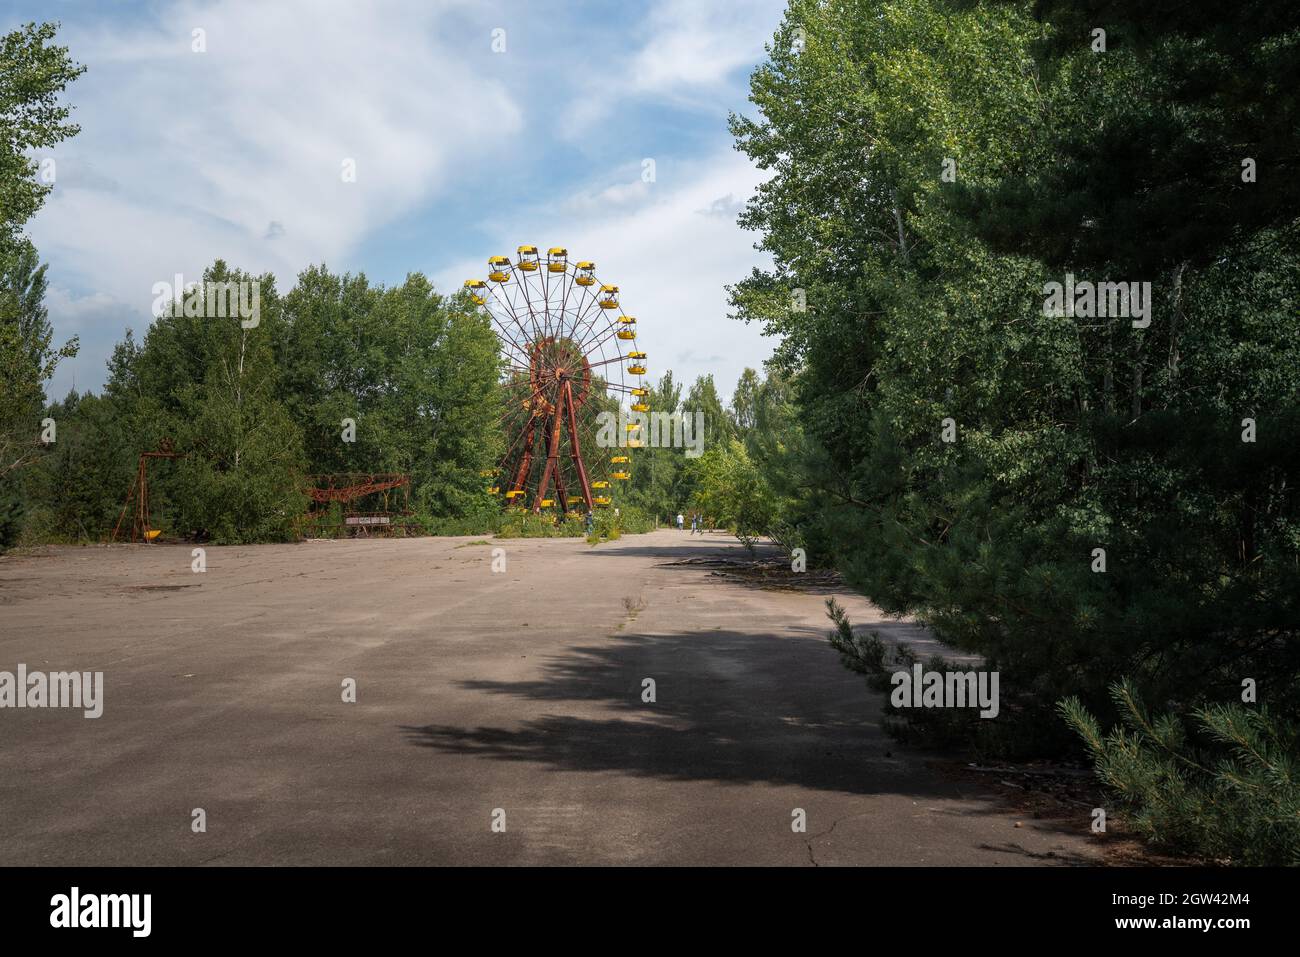 Riesenrad im verlassenen Vergnügungspark - Pripyat, Tschernobyl-Ausschlusszone, Ukraine Stockfoto